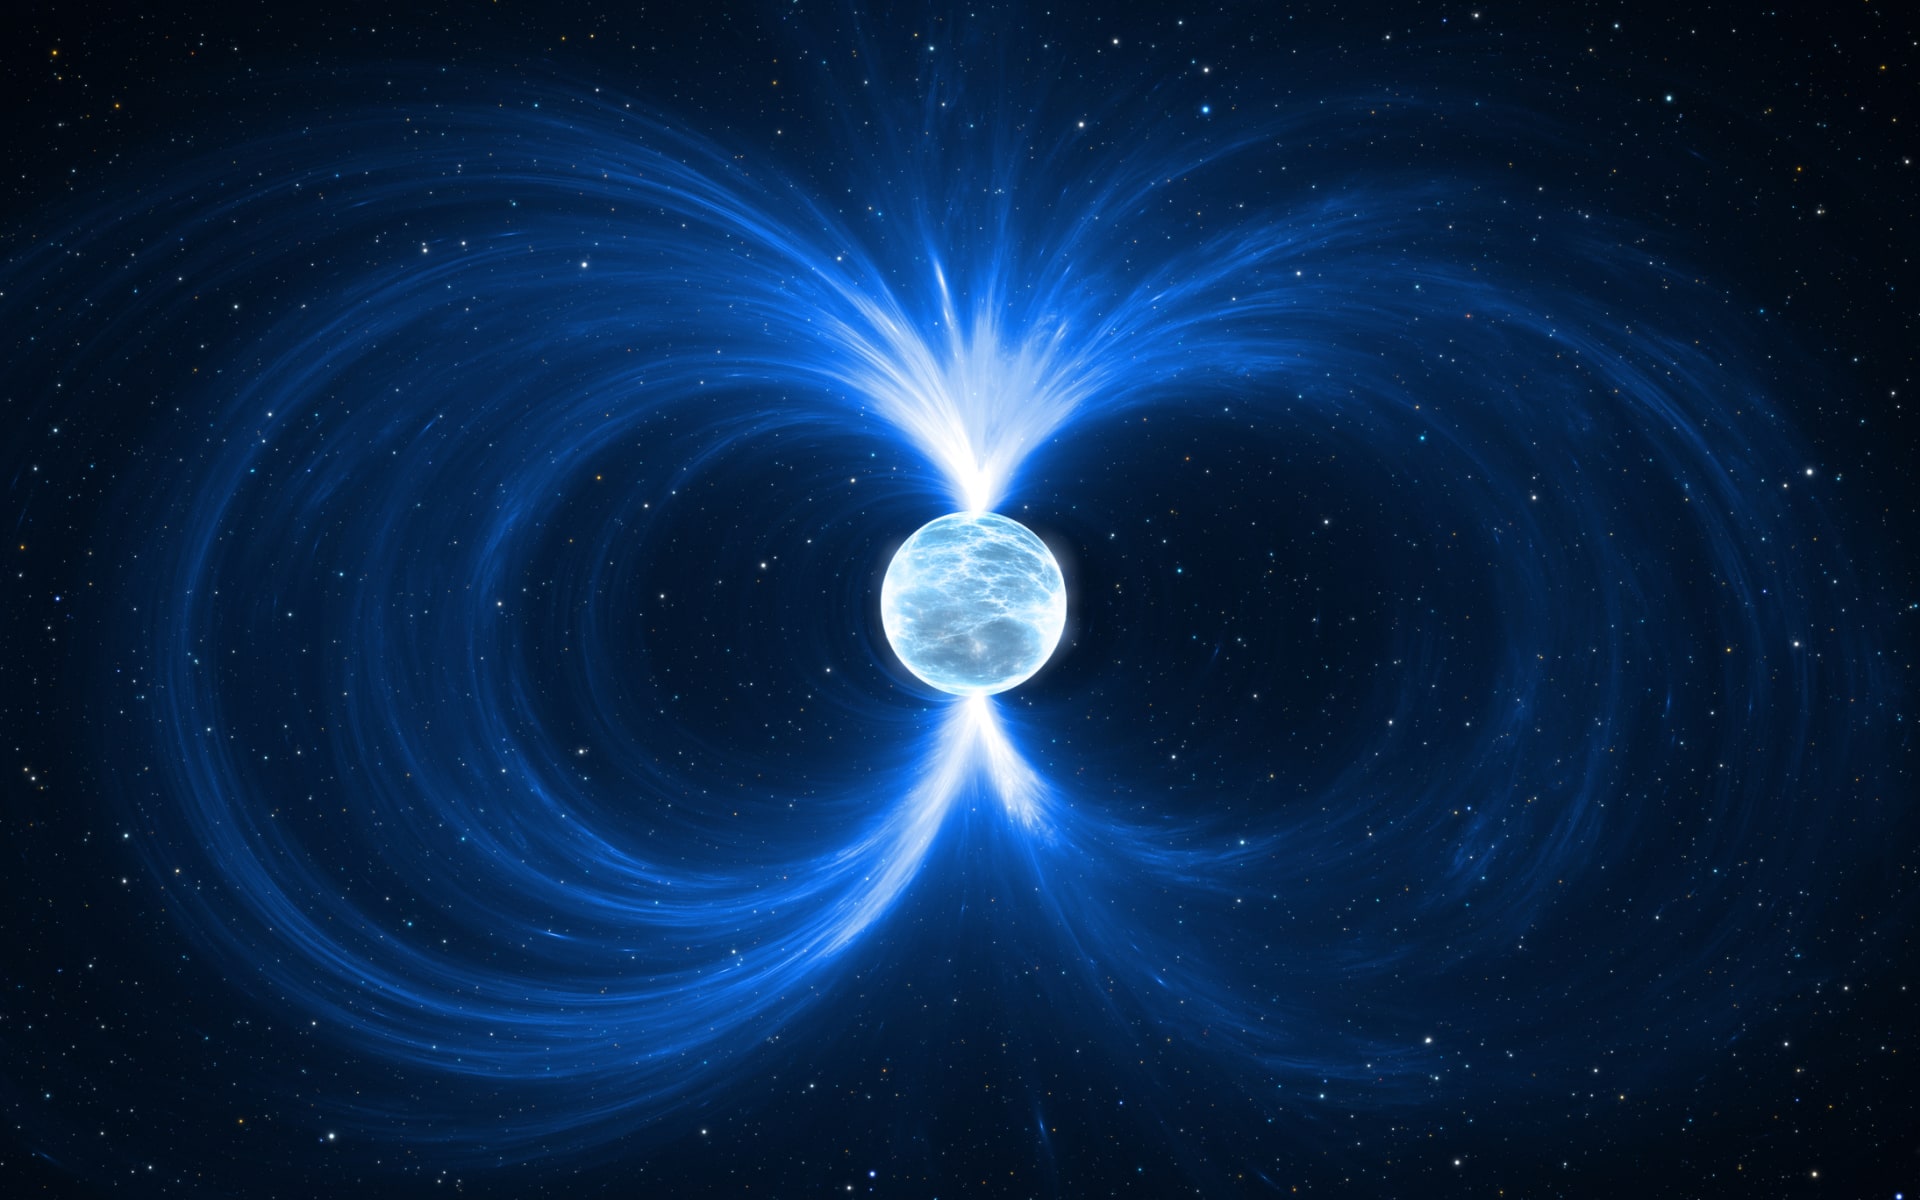 V přítomnosti magnetarů byste možná chvíli levitovali, ale než byste si to stačili užít, zastihla by vás bolestivá smrt